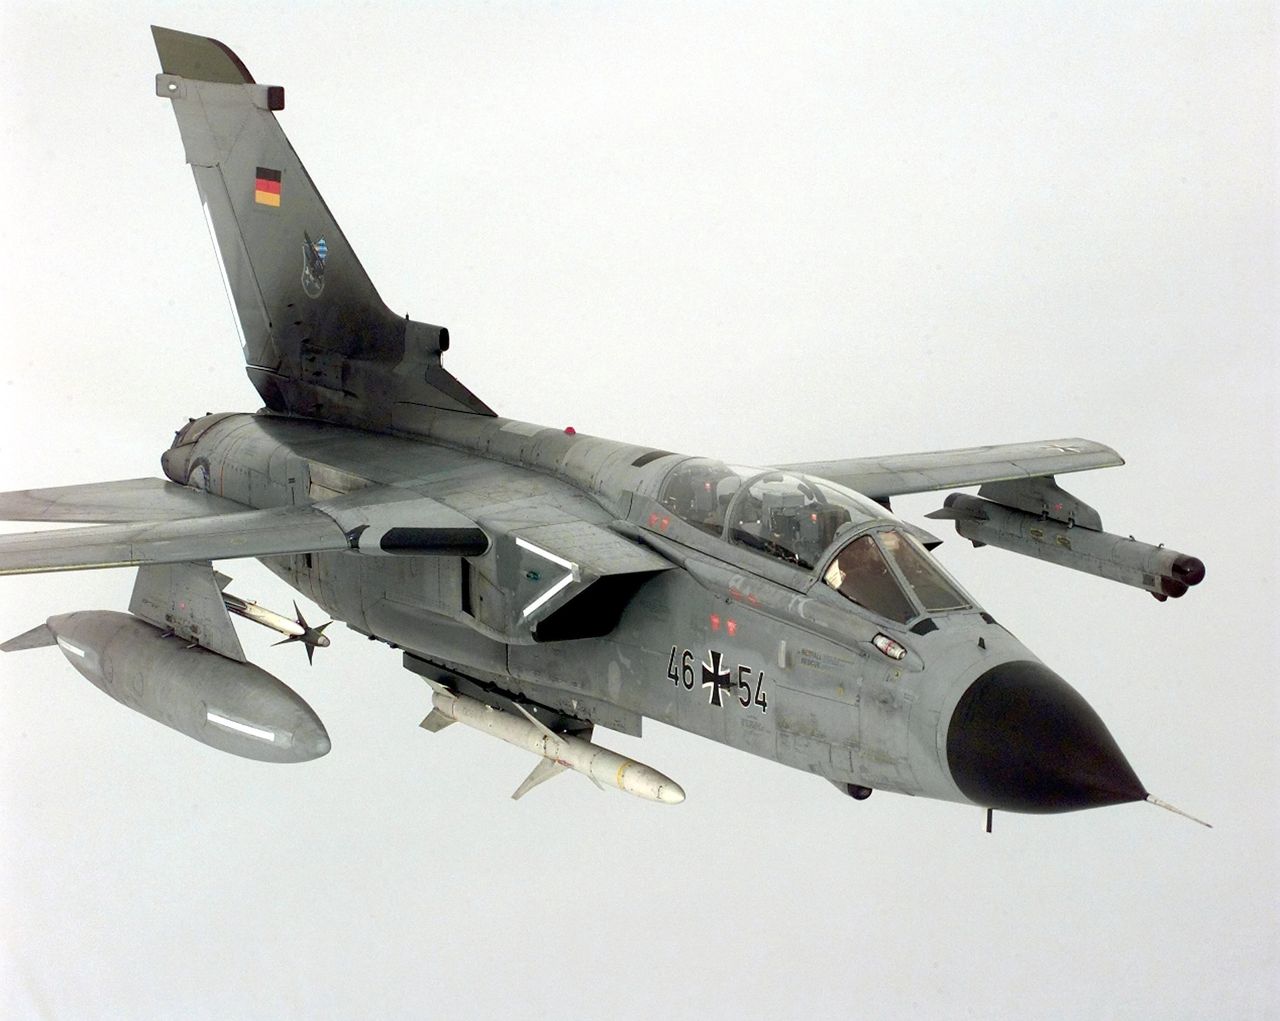 Samolot Panavia Tornado w niemieckich barwach. Maszyny tego typu zostały dostosowane do przenoszenia broni jądrowej